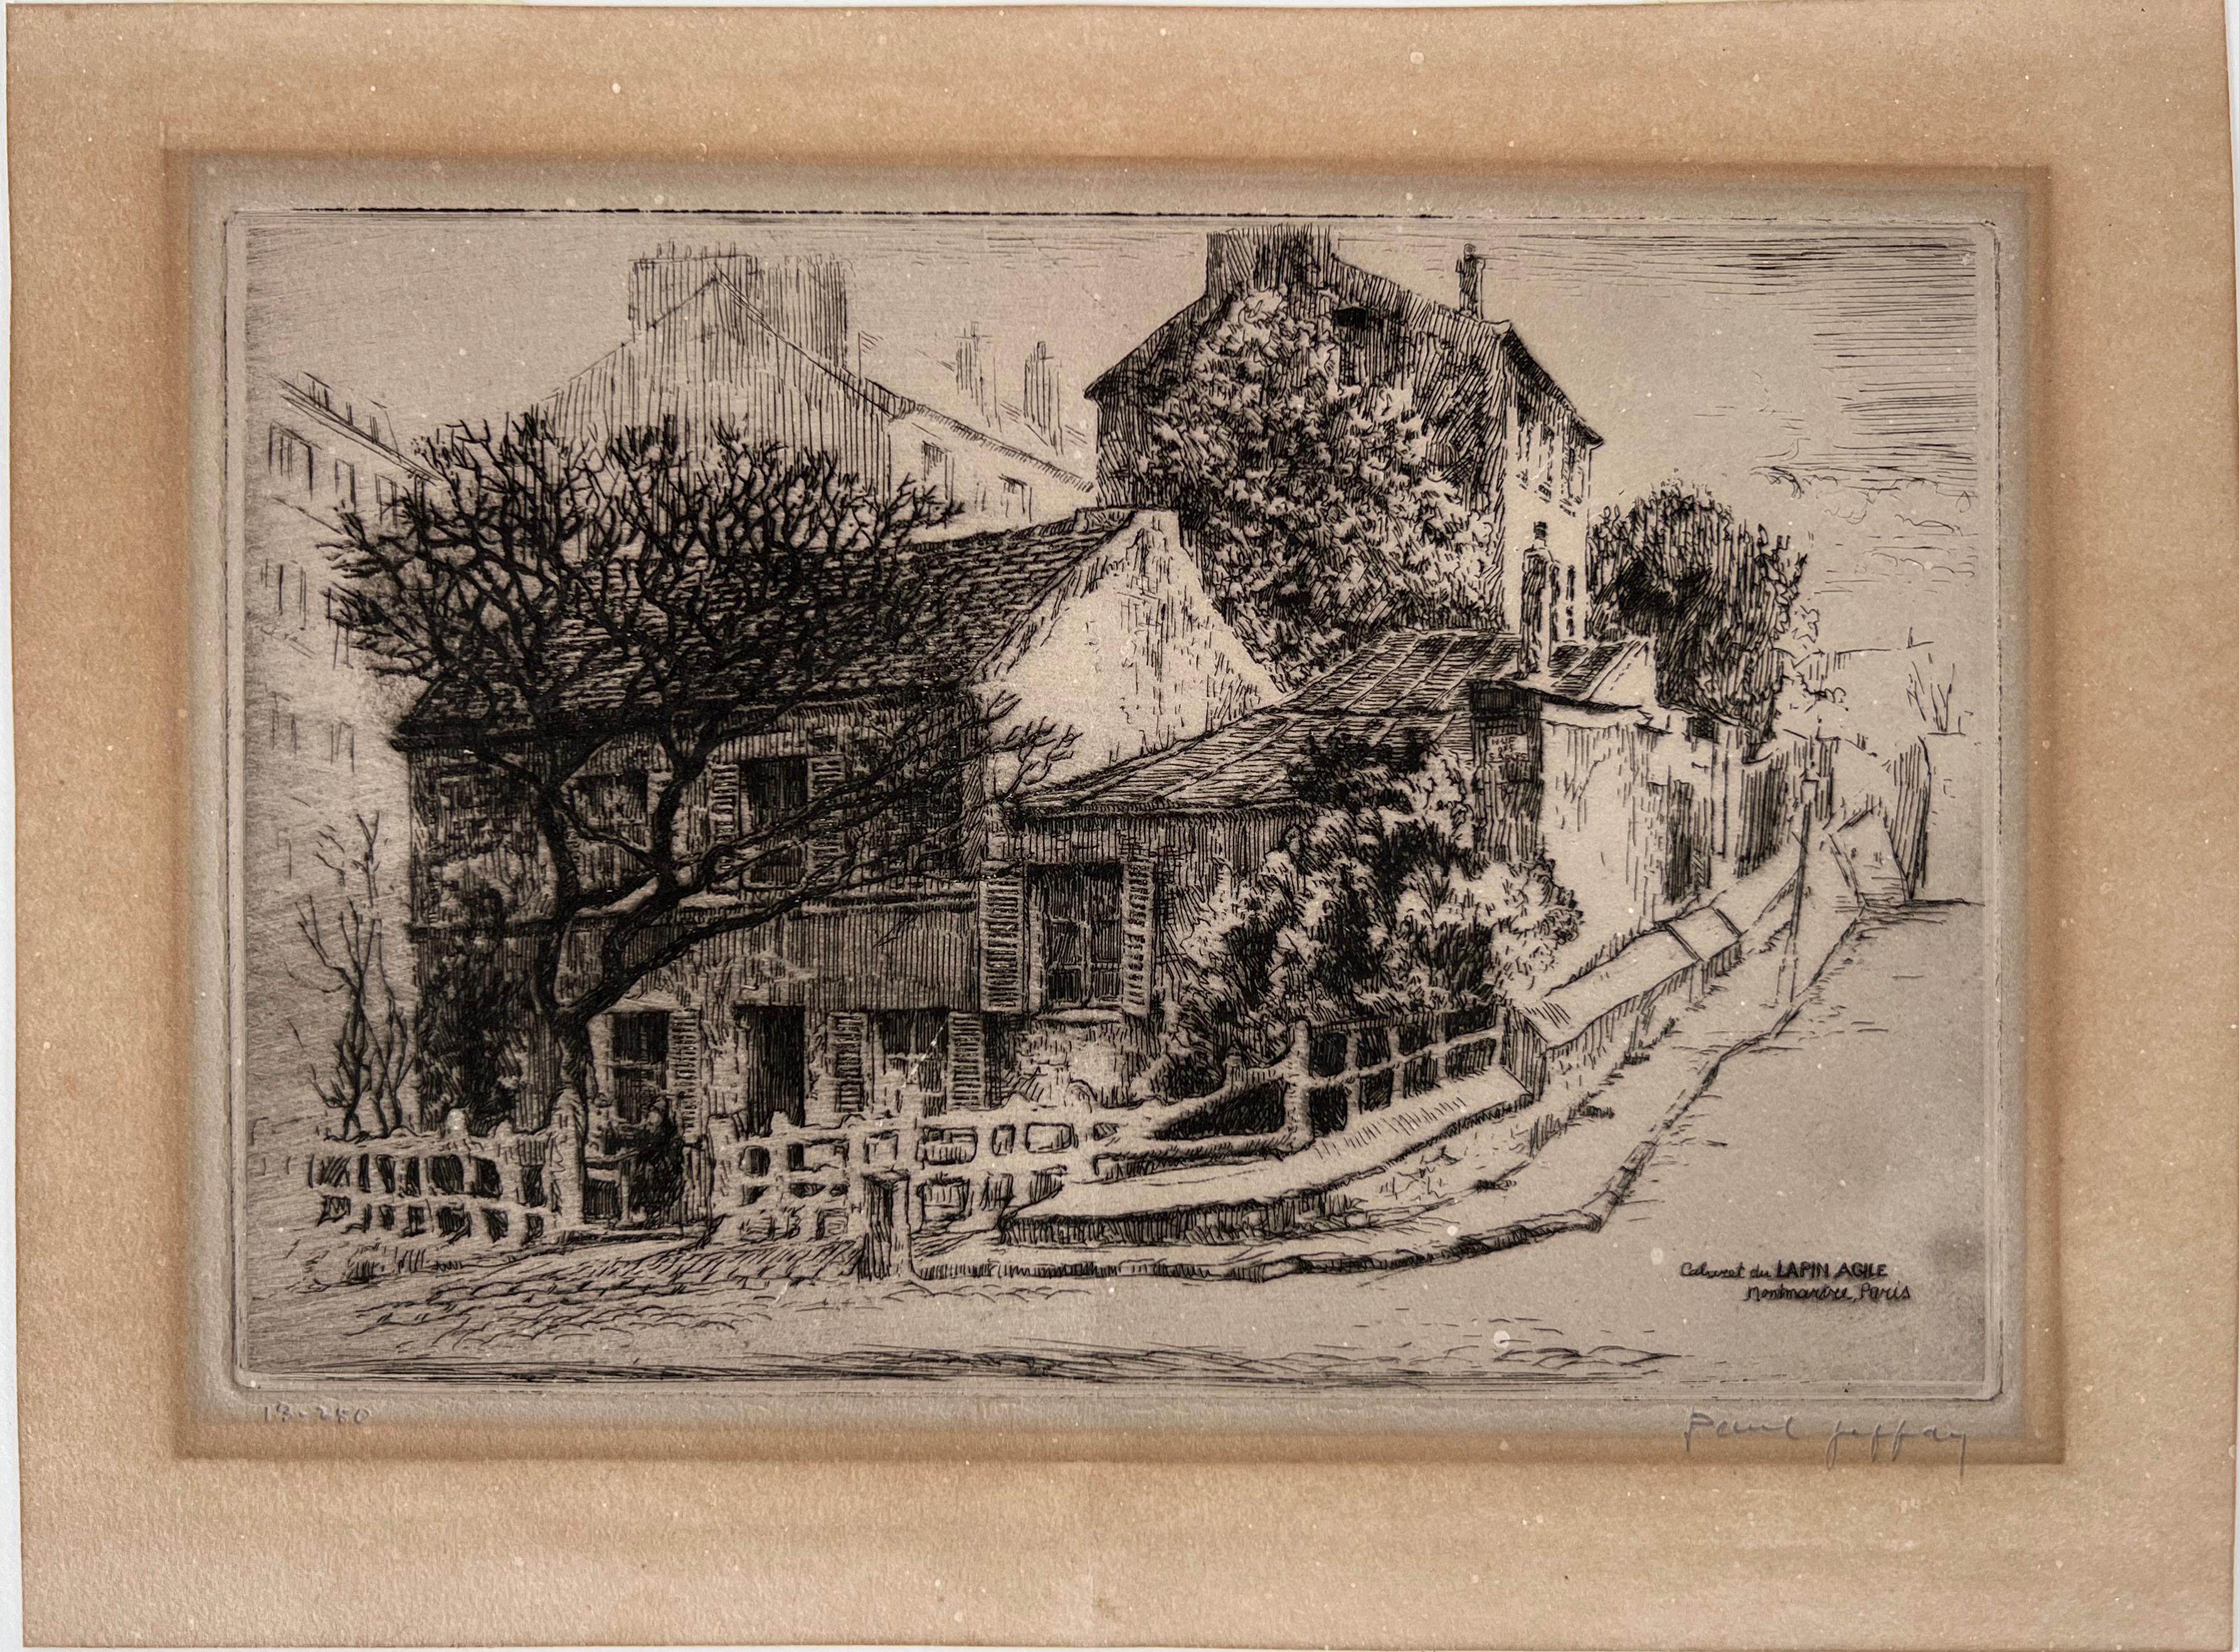 Caberet du Lapin Agile, Montmartre, Paris 1920  - Print by Paul Jeffay